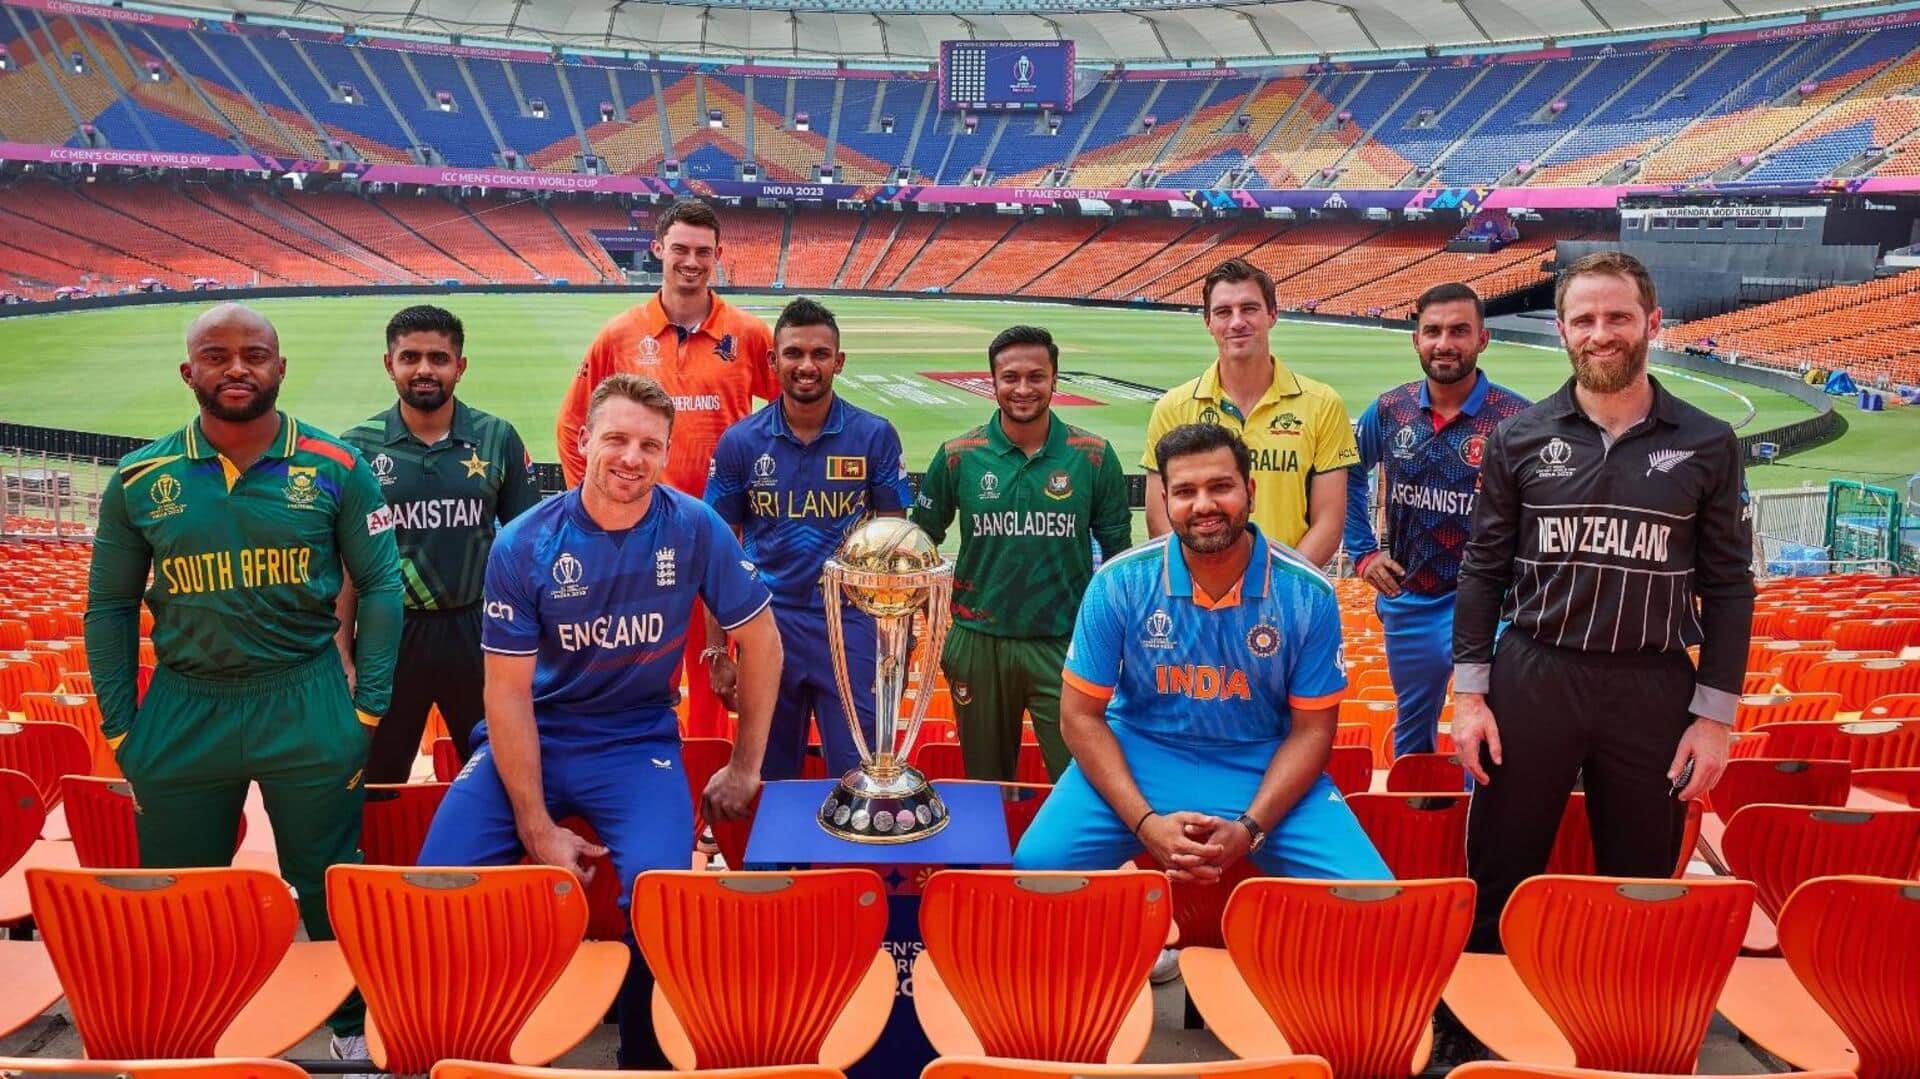 न्यूजबाइट्स हिंदी ने चुनी साल 2023 की सर्वश्रेष्ठ पुरुष वनडे टीम, इन खिलाड़ियों को मिली जगह